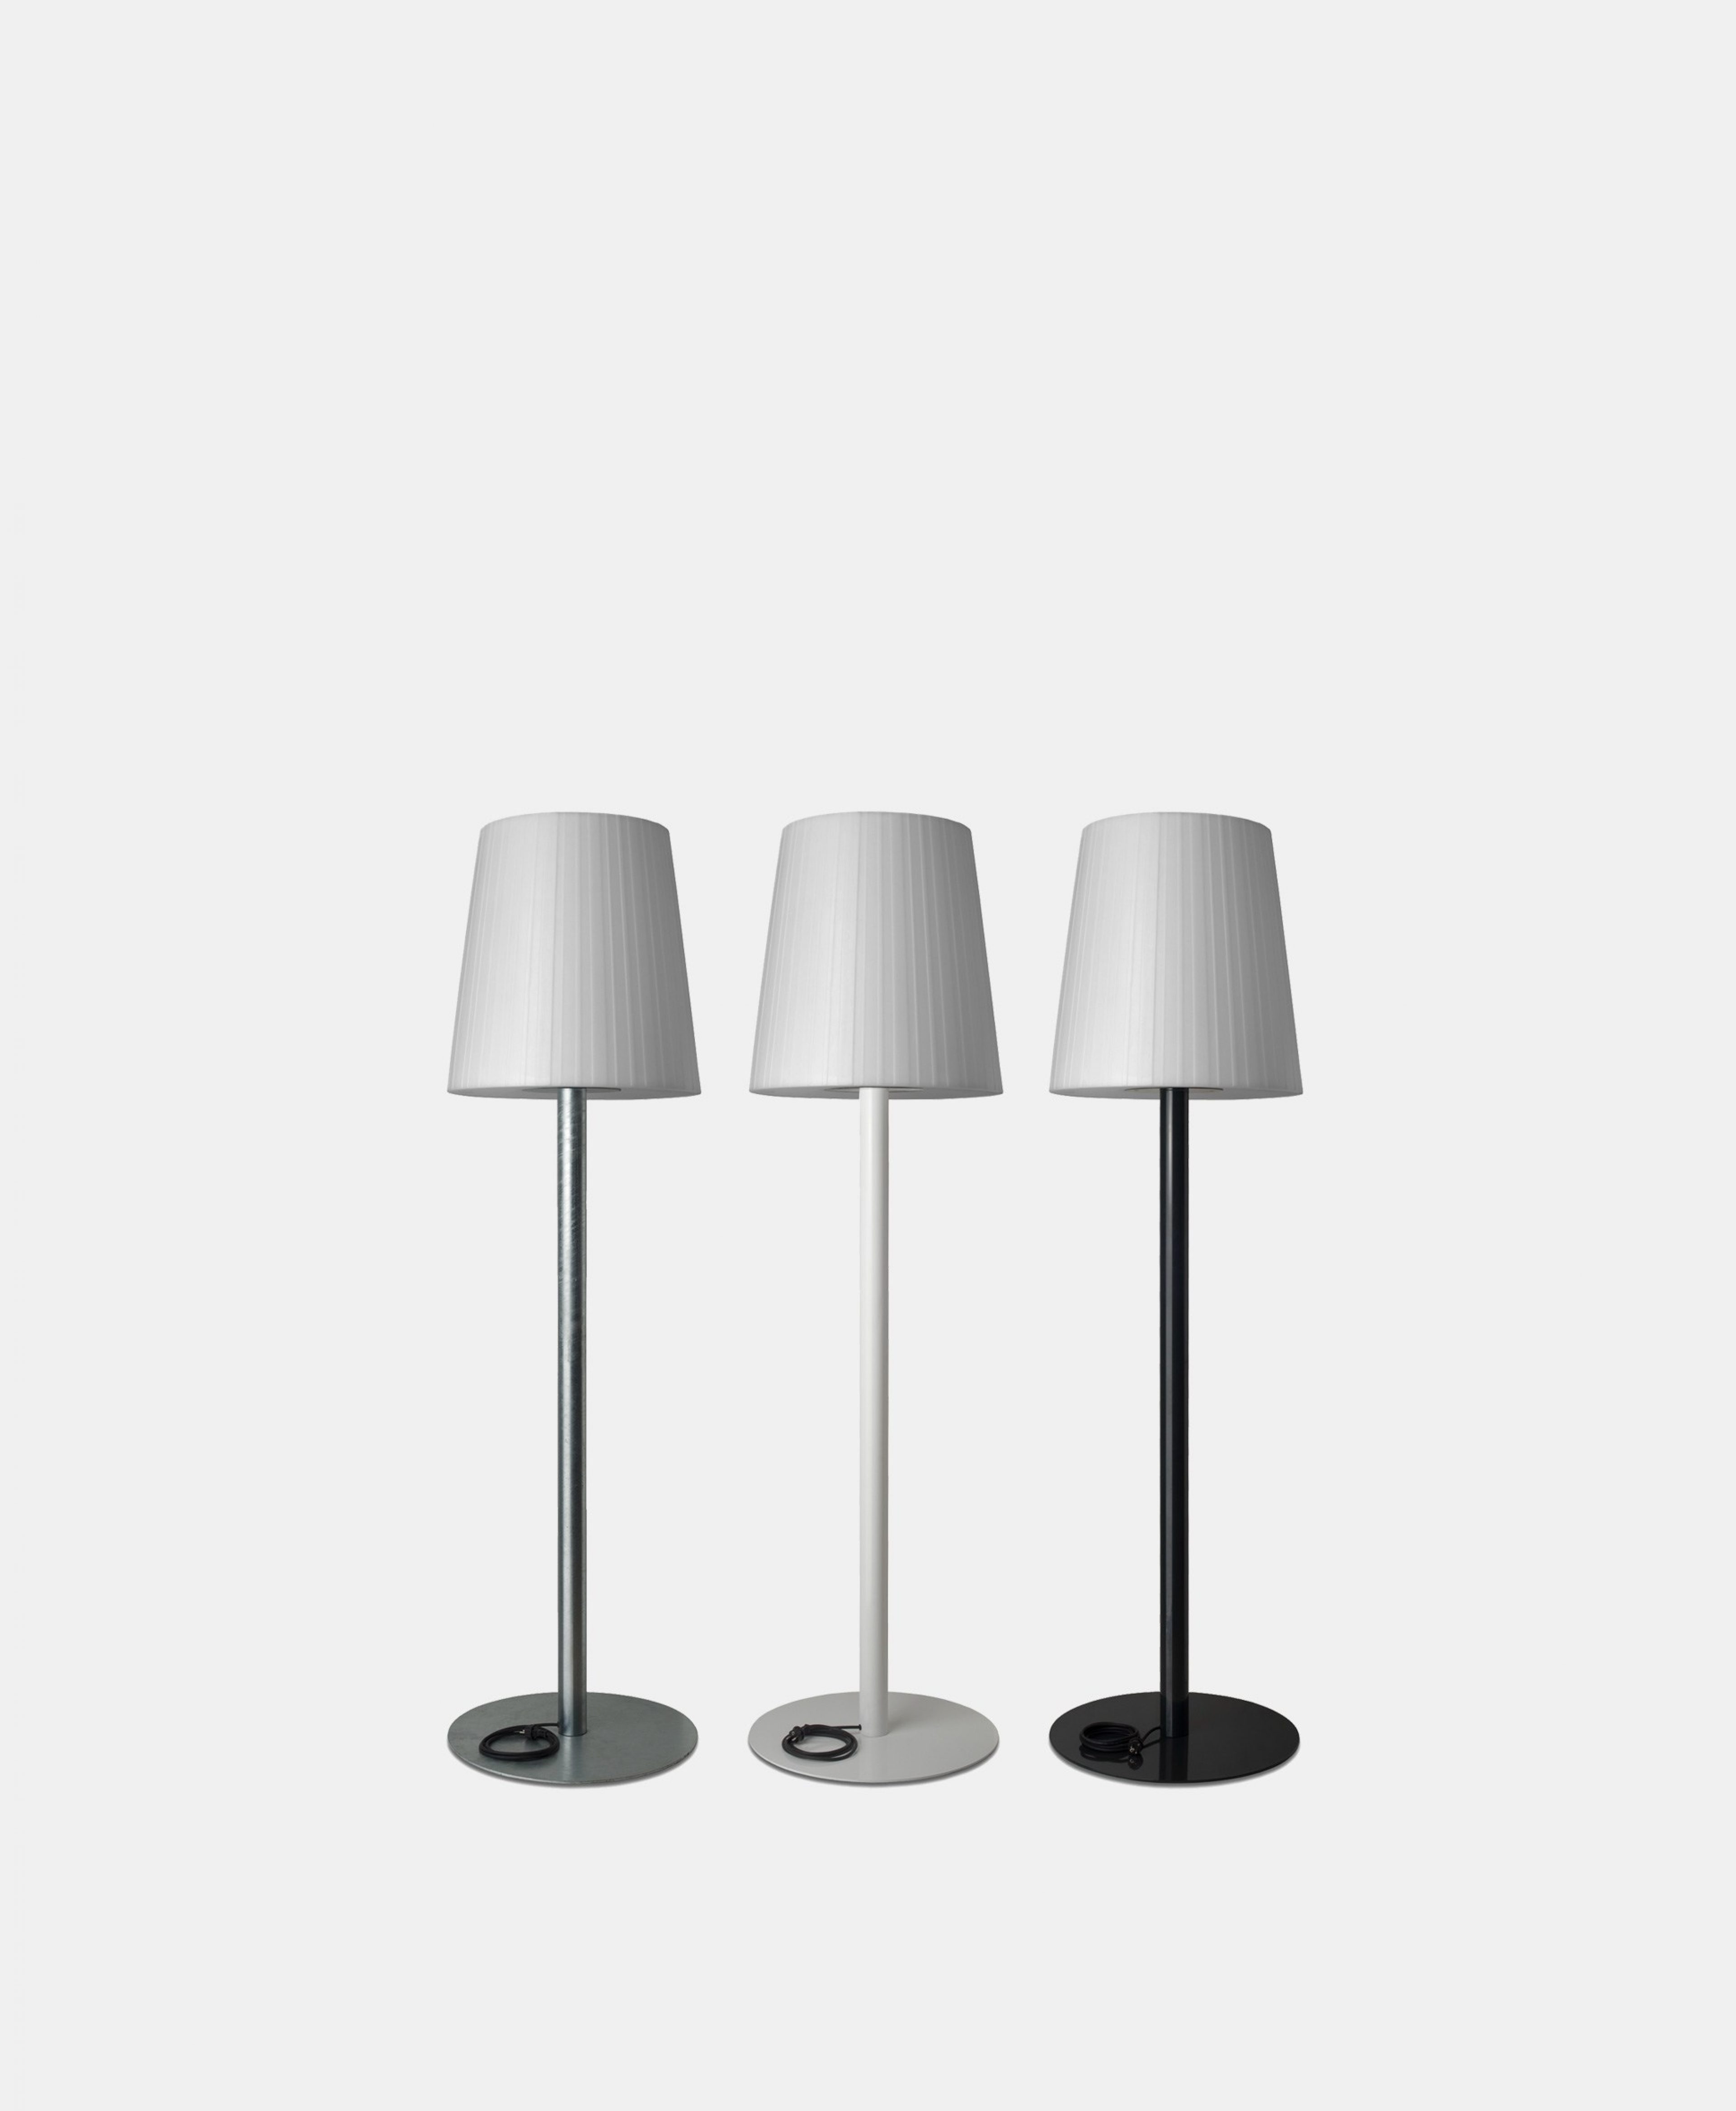 Lichte©
Standing lamp